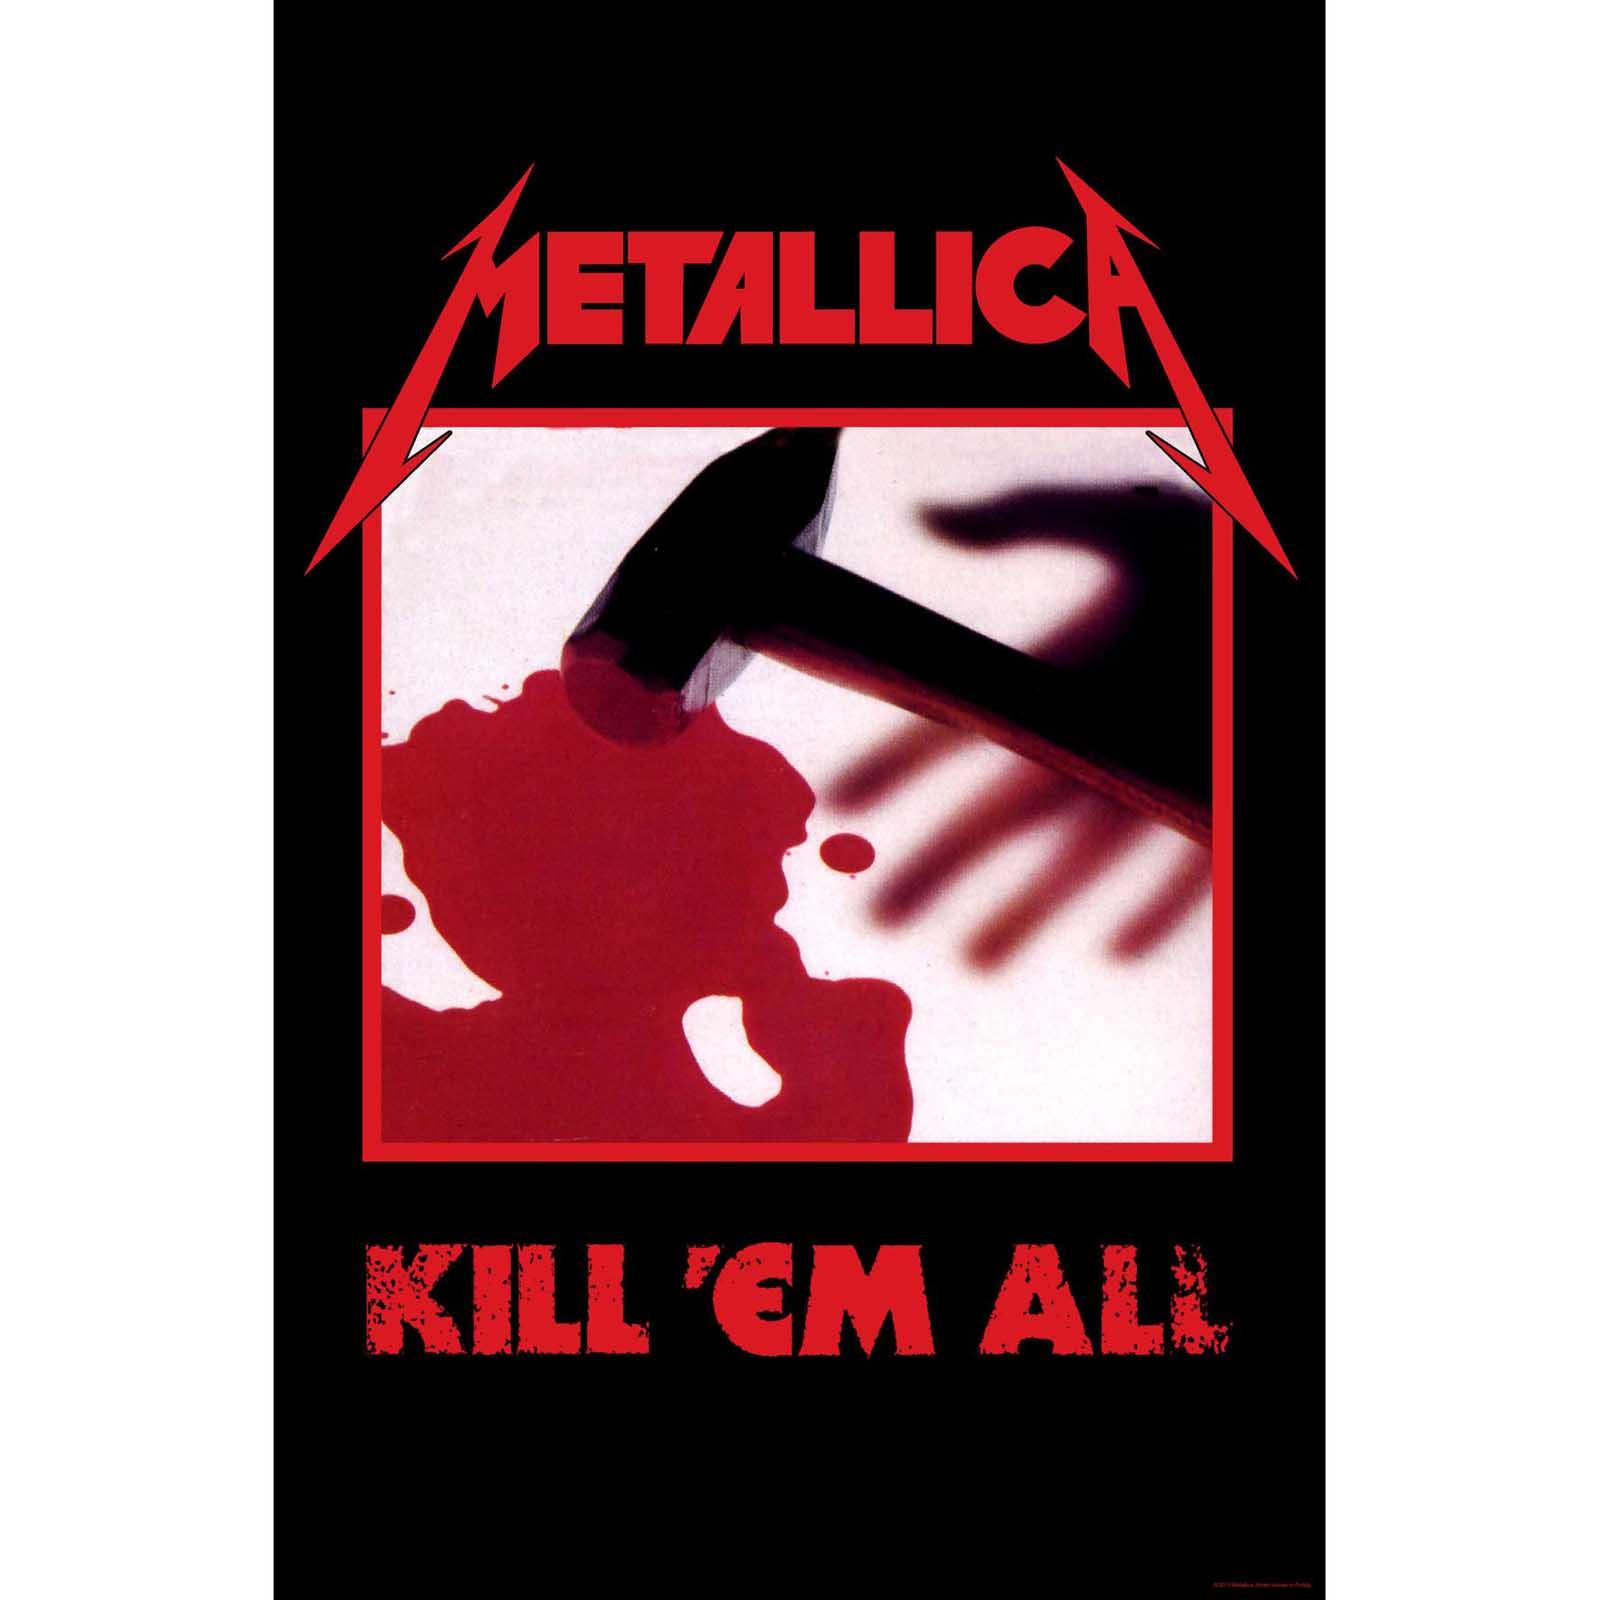 (メタリカ) Metallica オフィシャル商品 Kill Em All テキスタイルポスター 布製 ポスター 【海外通販】